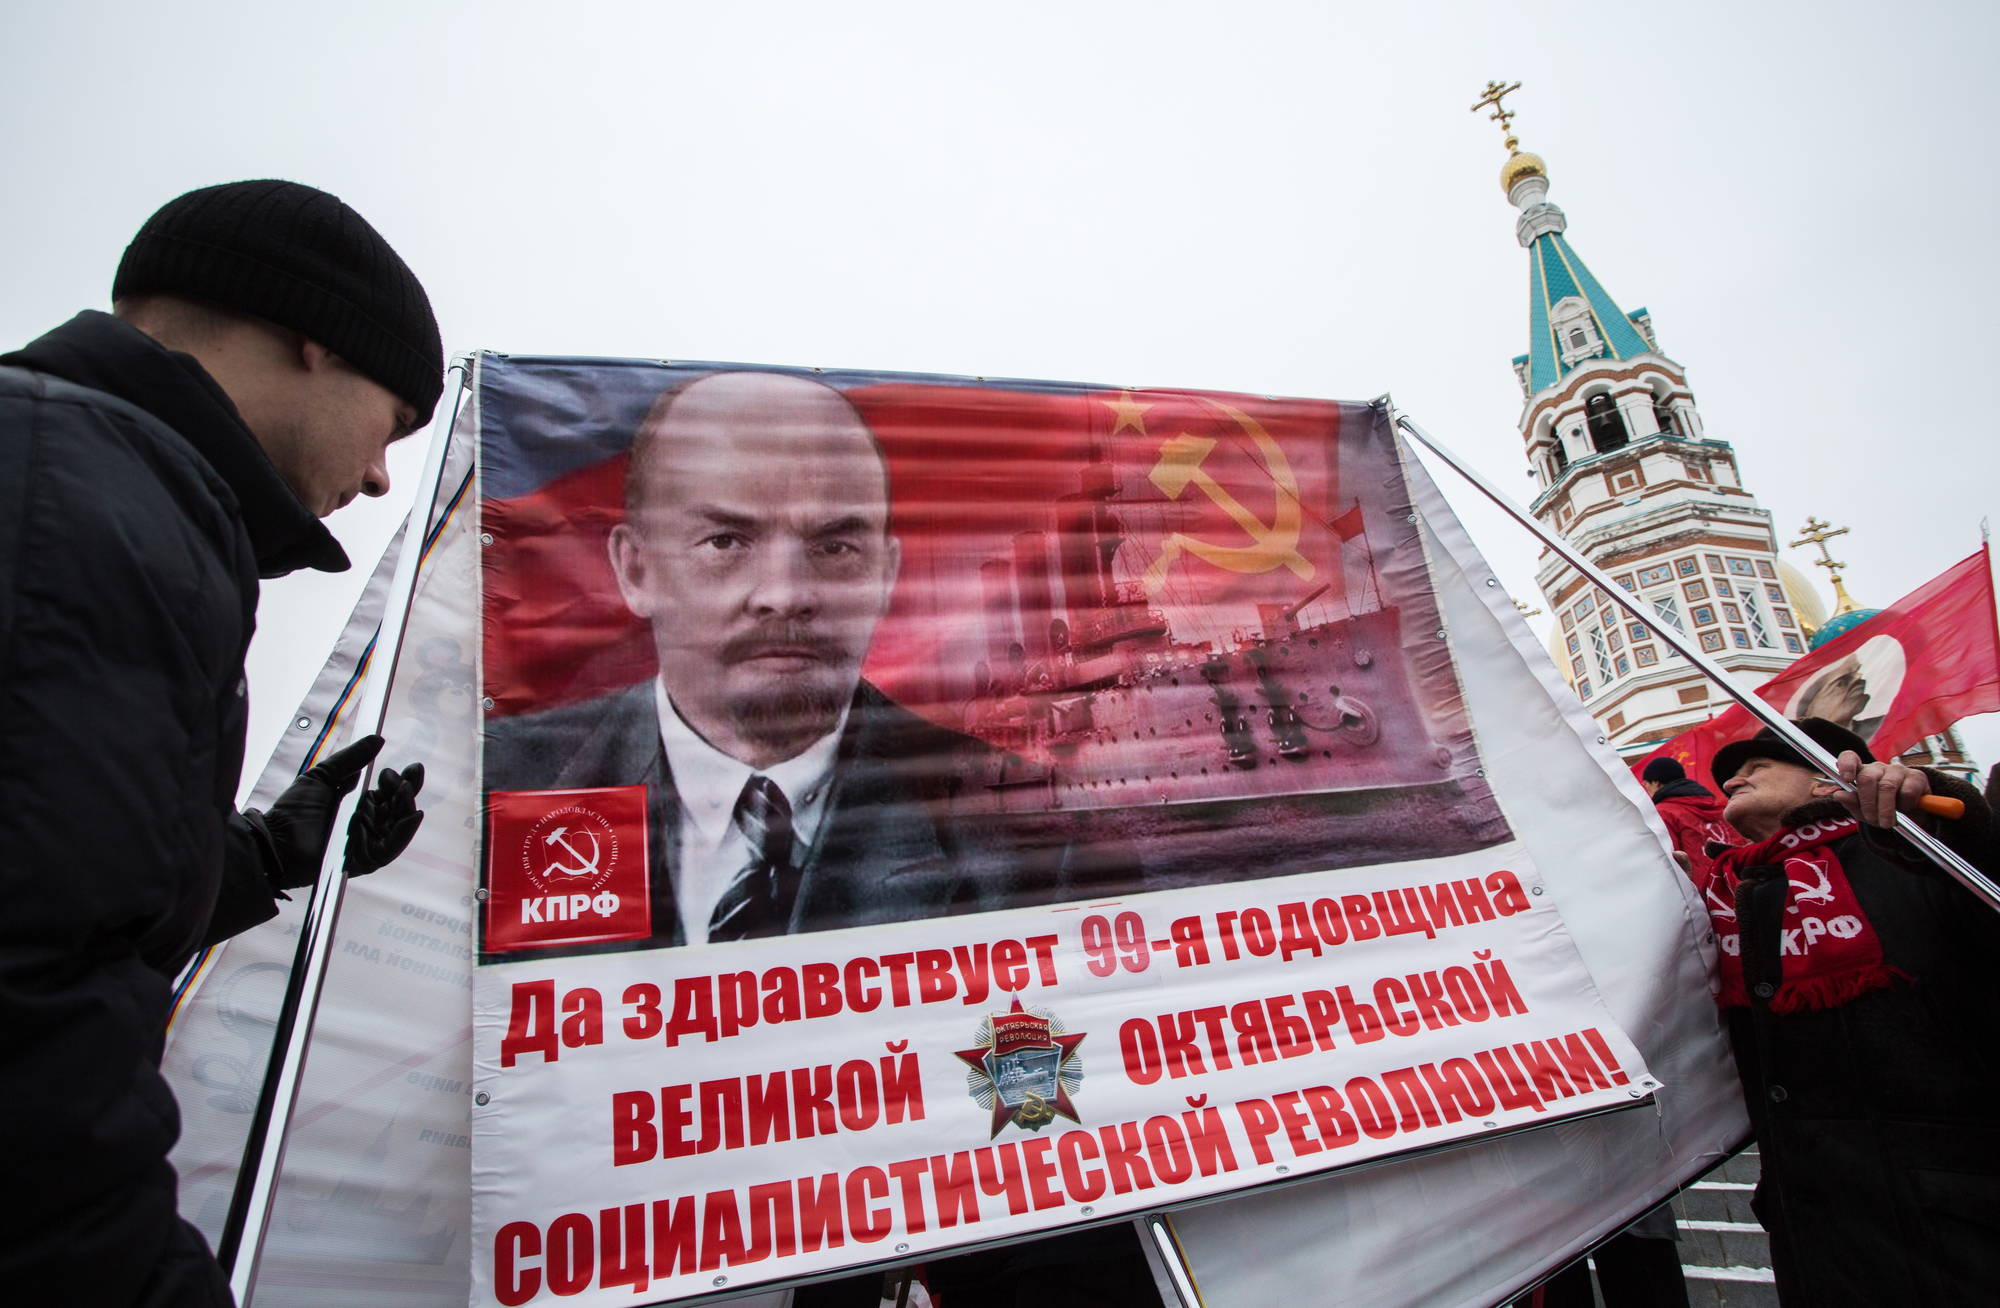 Supporter del Partito comunista russo inneggiano a Lenin